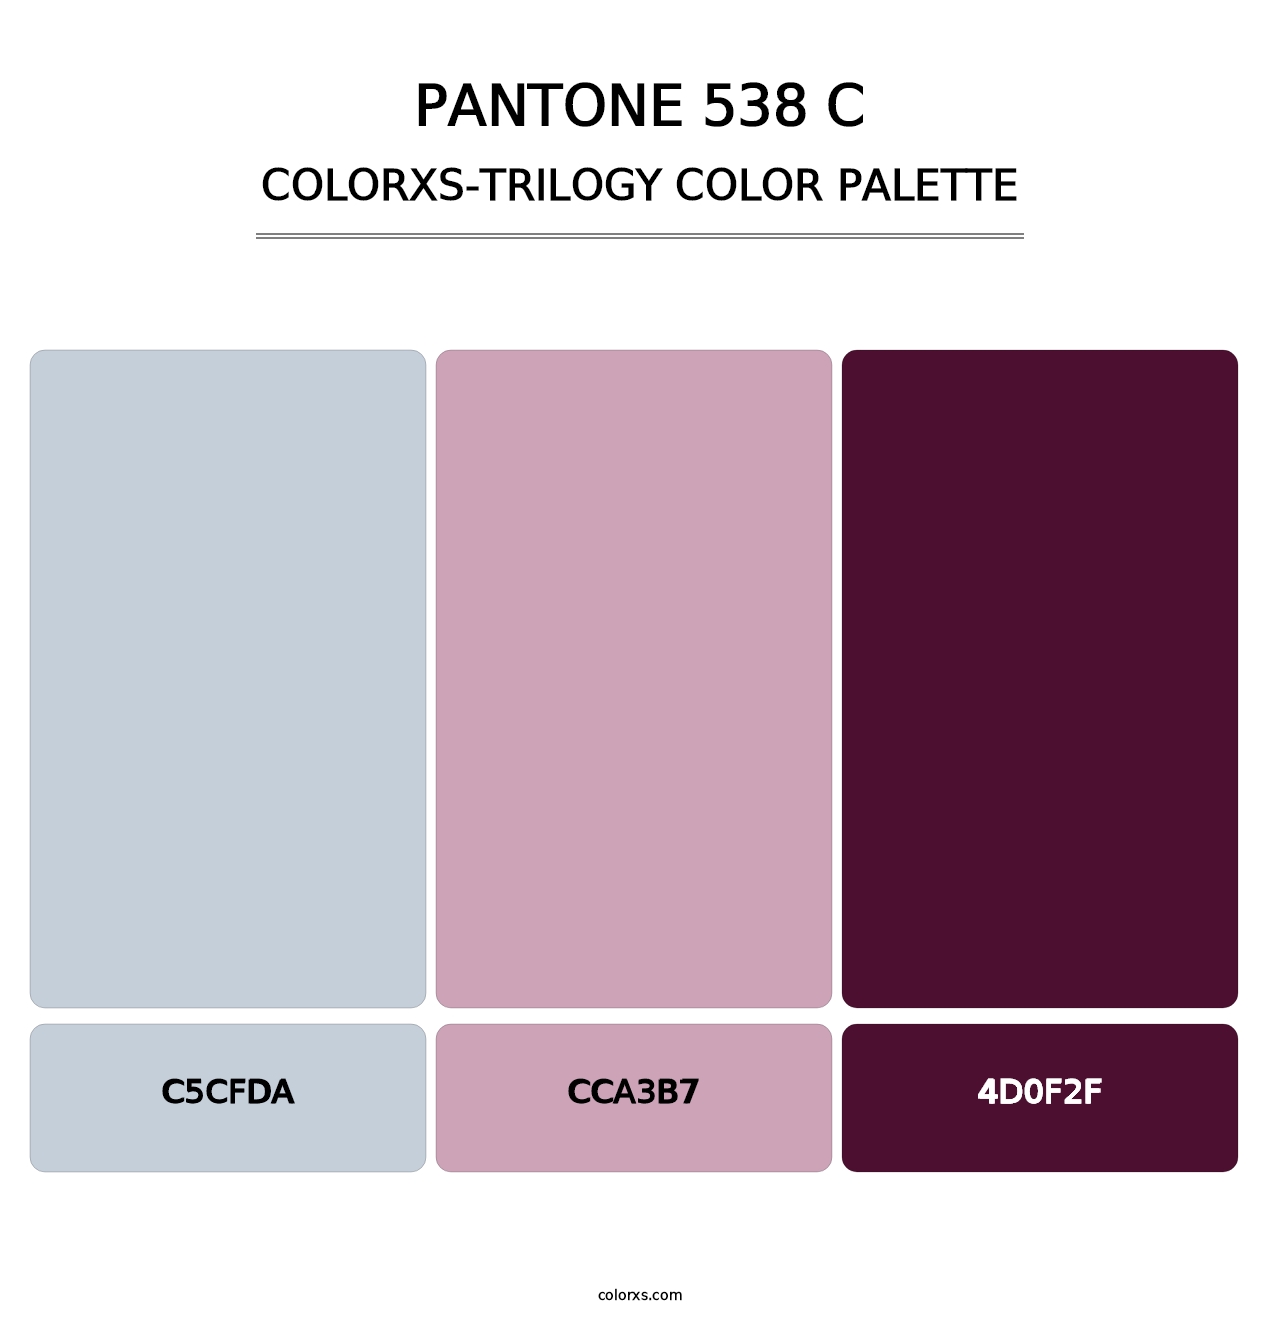 PANTONE 538 C - Colorxs Trilogy Palette